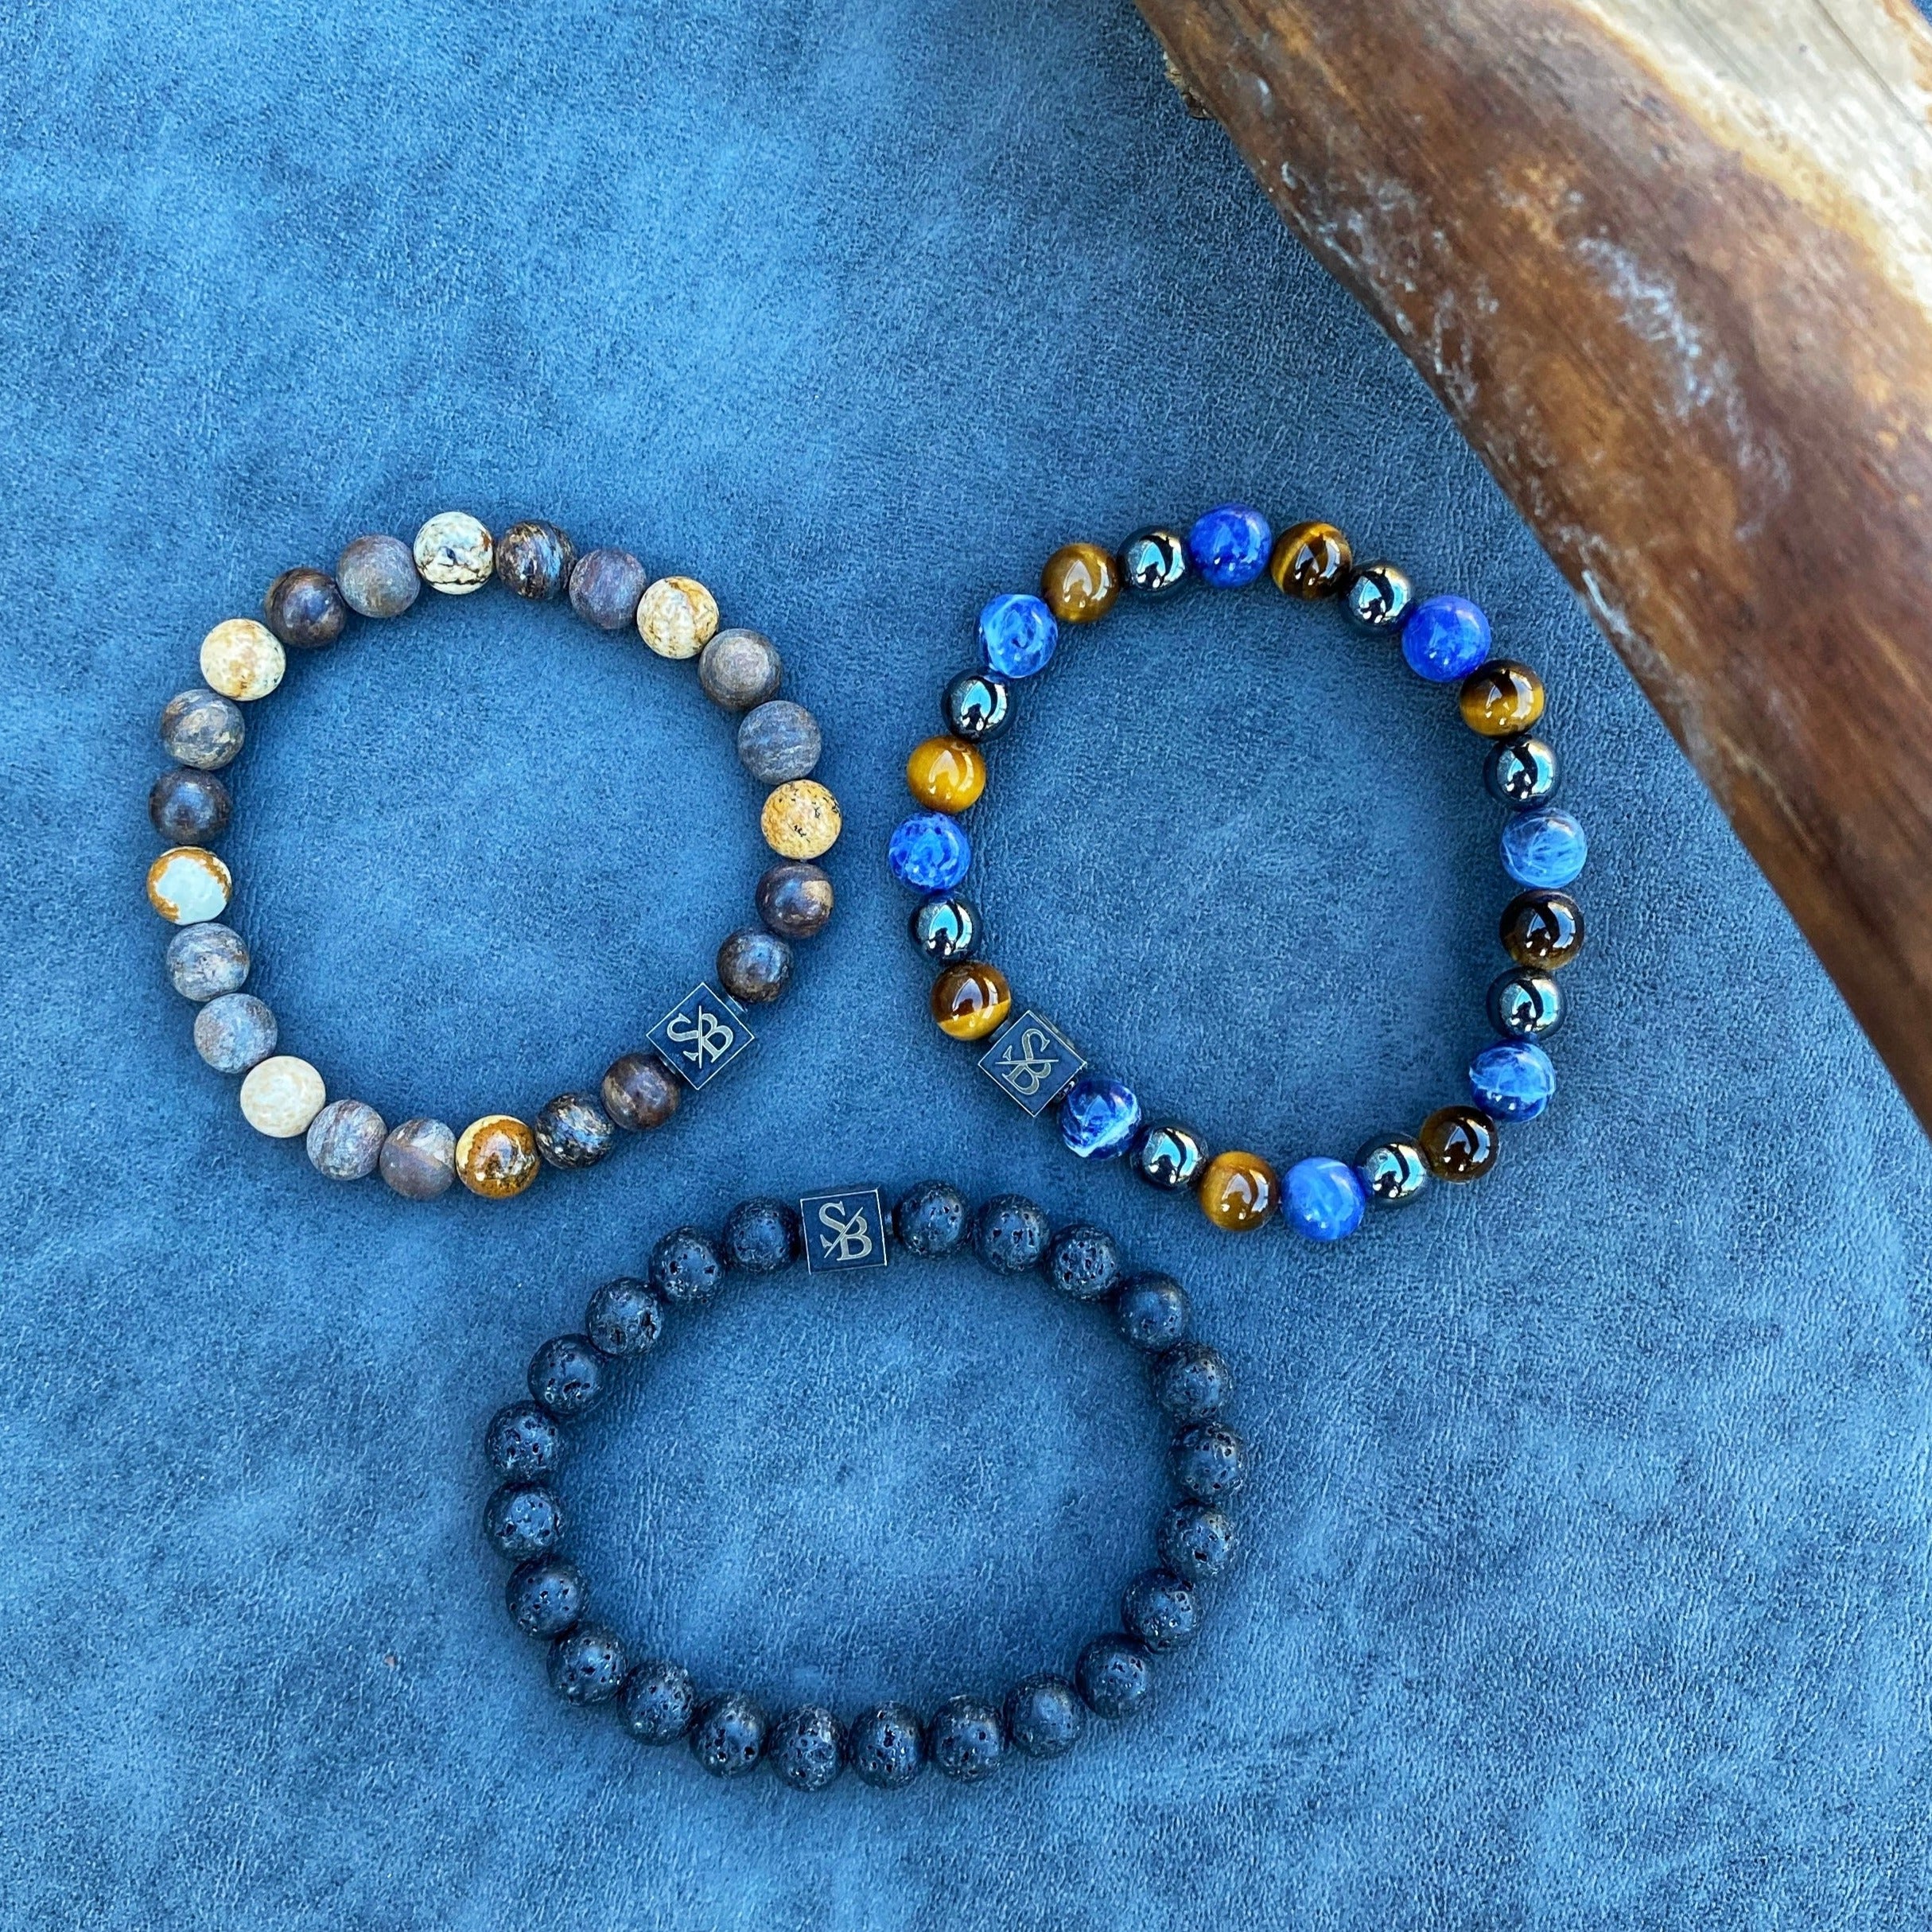 Drie regenwoud | Mixed Stones (8mm) armbanden op een blauwe achtergrond van Stoney Bracelets.